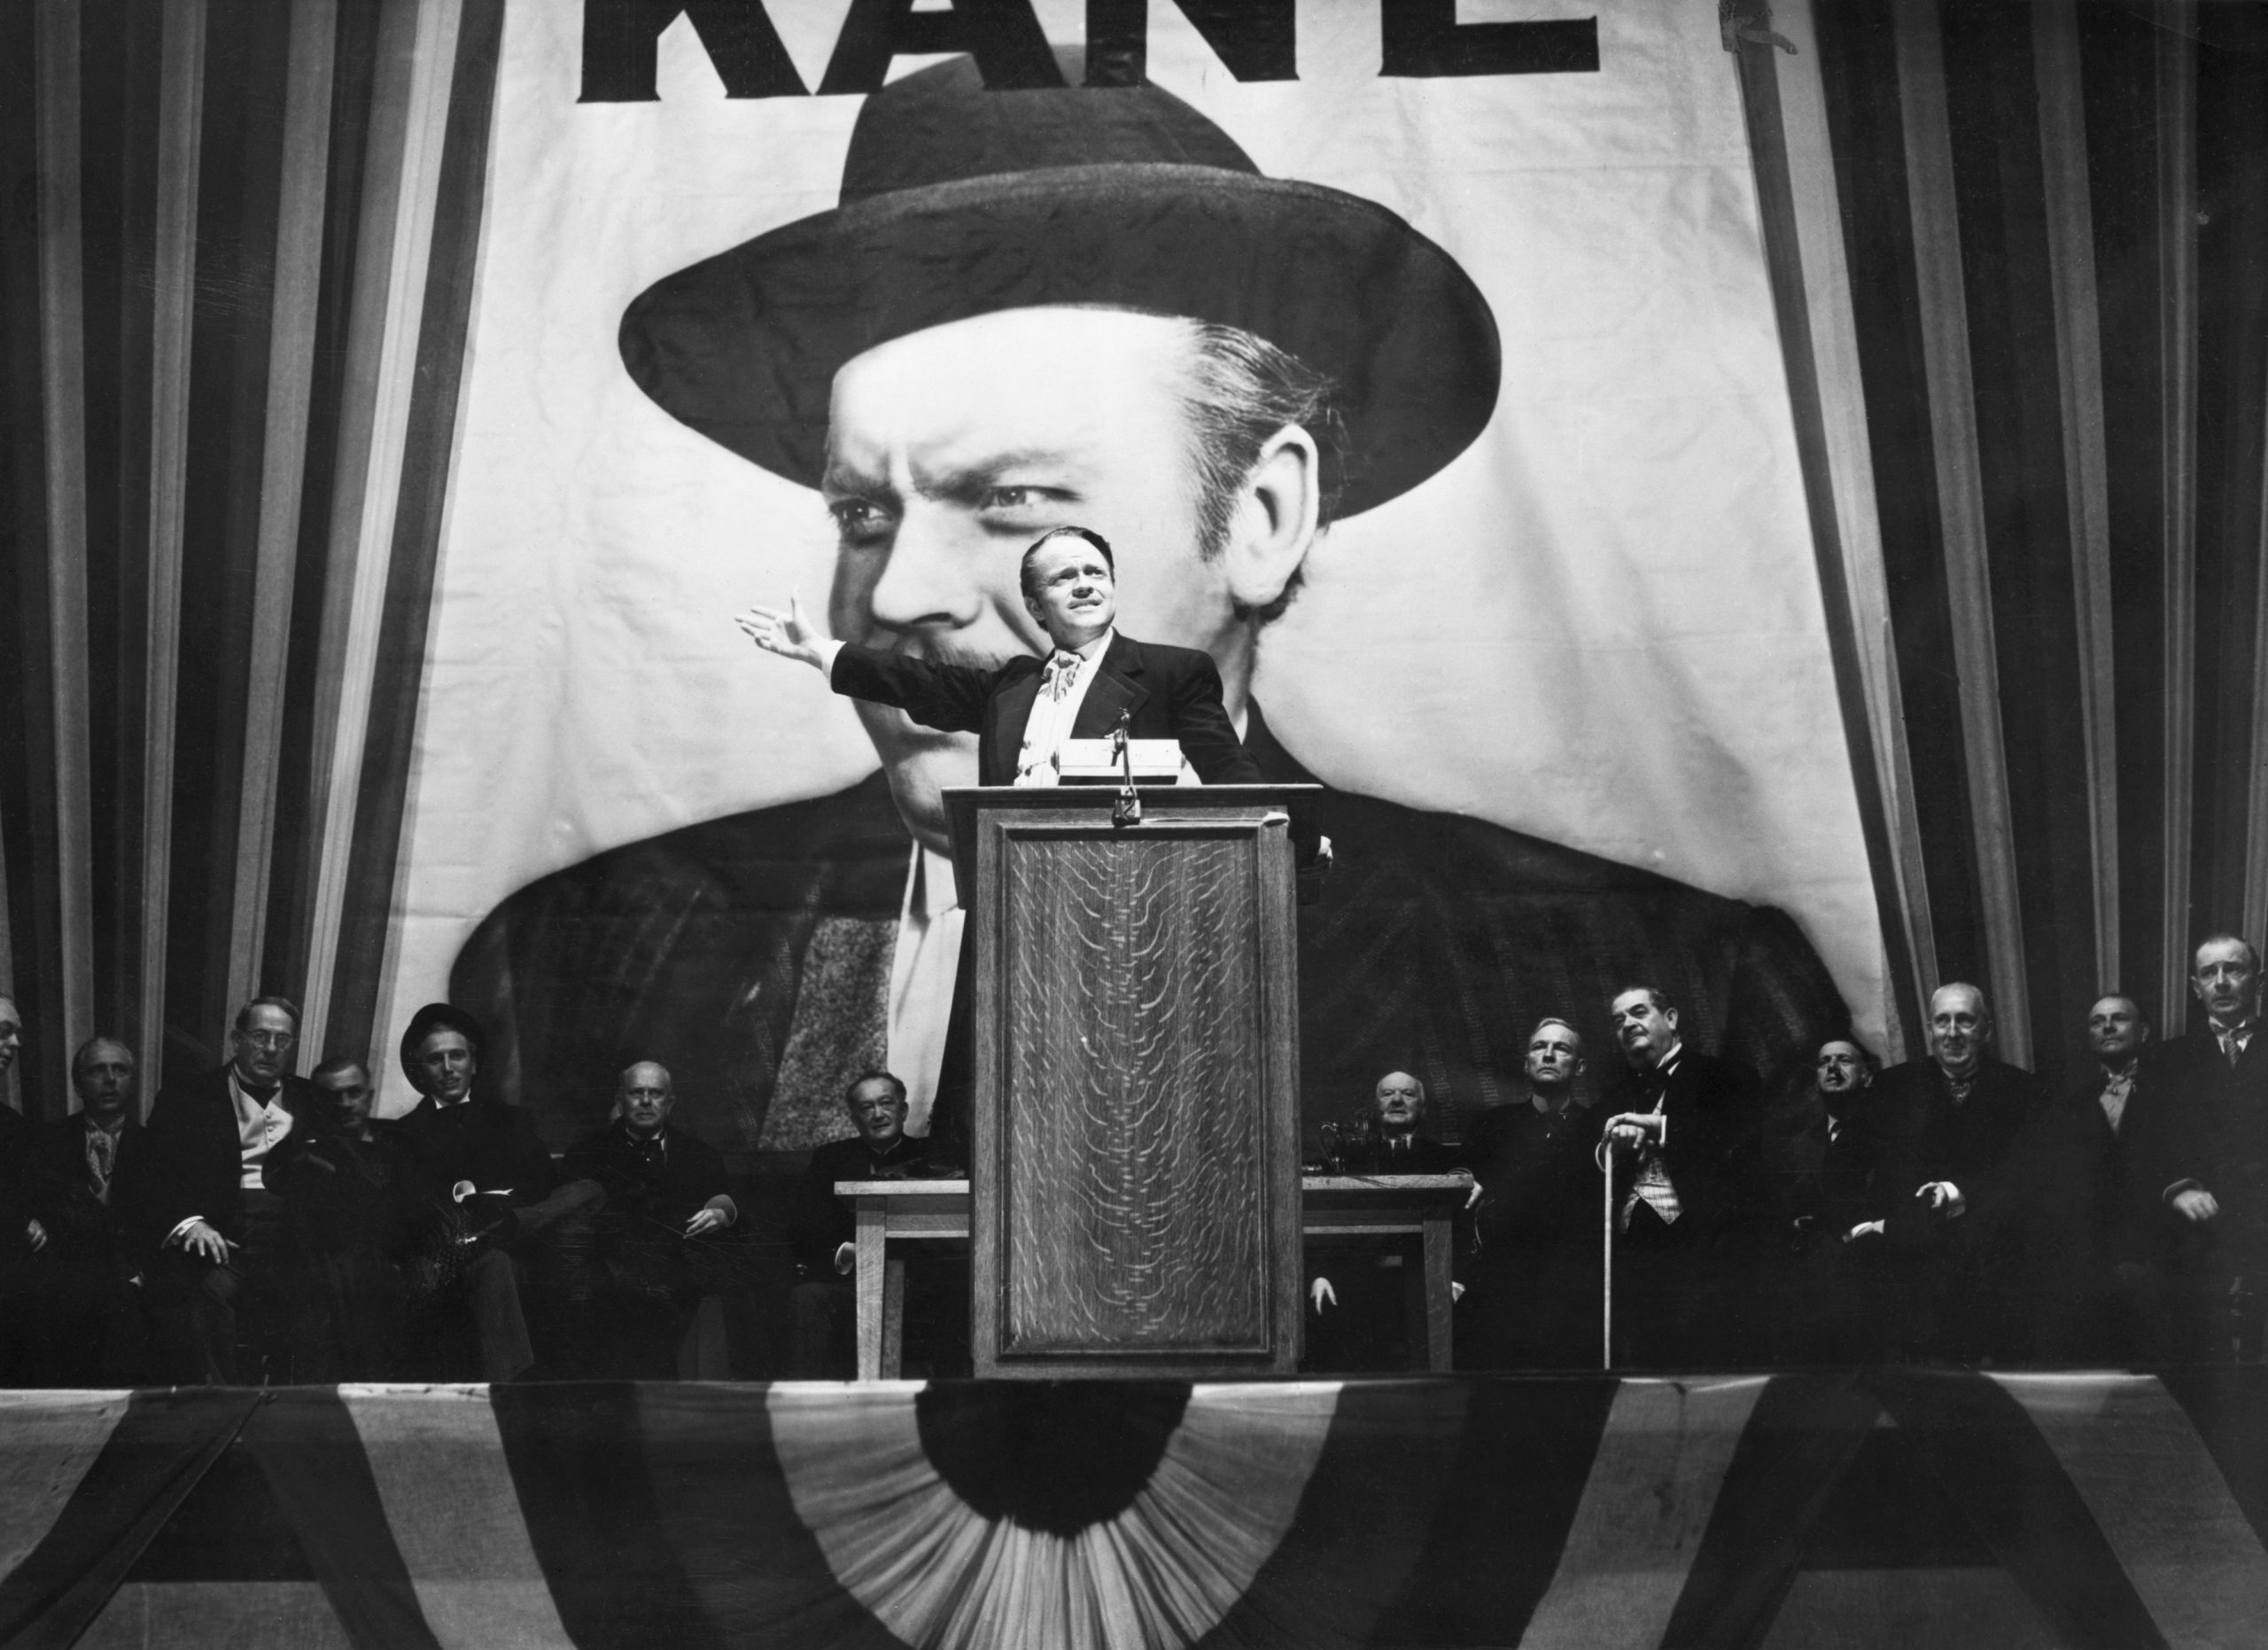 Contando la otra historia de 'Citizen Kane': Una entrevista con David Fincher por 'Mank'